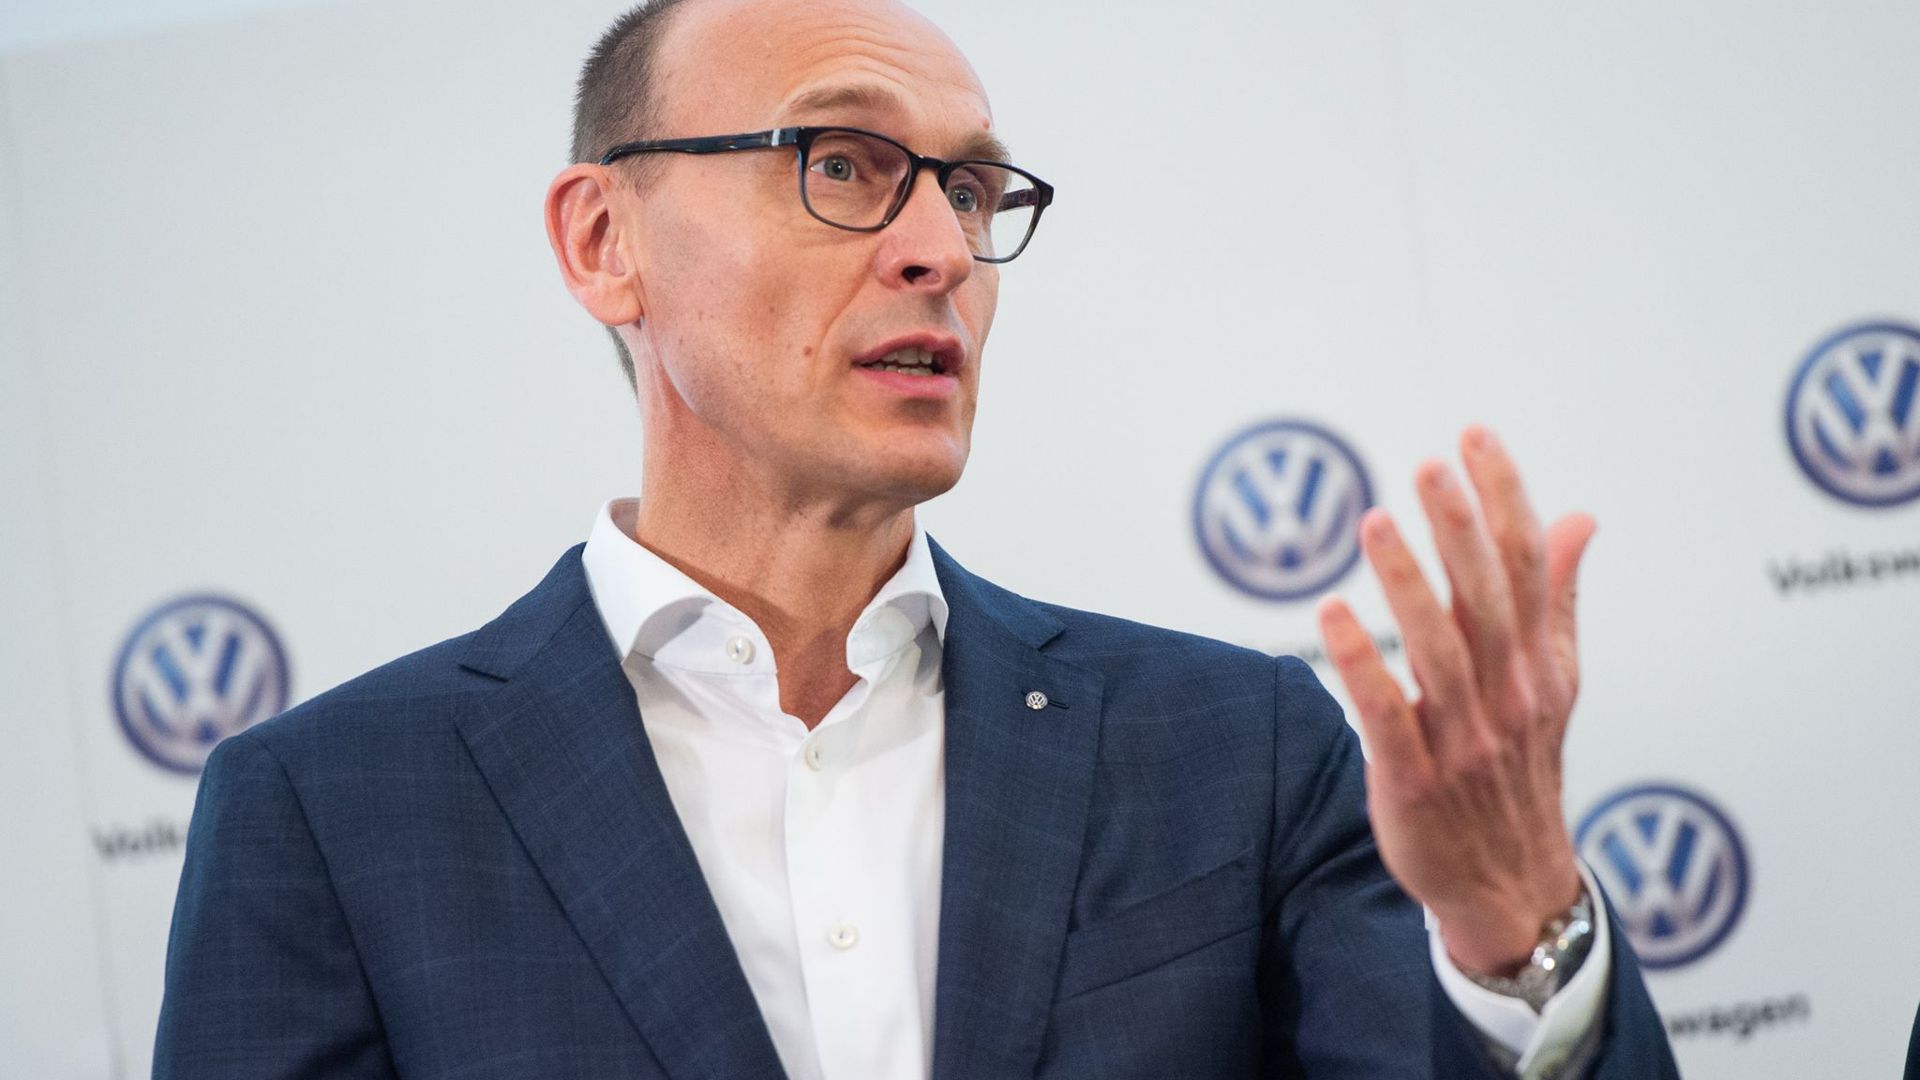 Laut VW-Markenchef Brandstätter muss Volkswagen trotz hoher Gewinne im vergangenen Jahr vorsichtig sein.